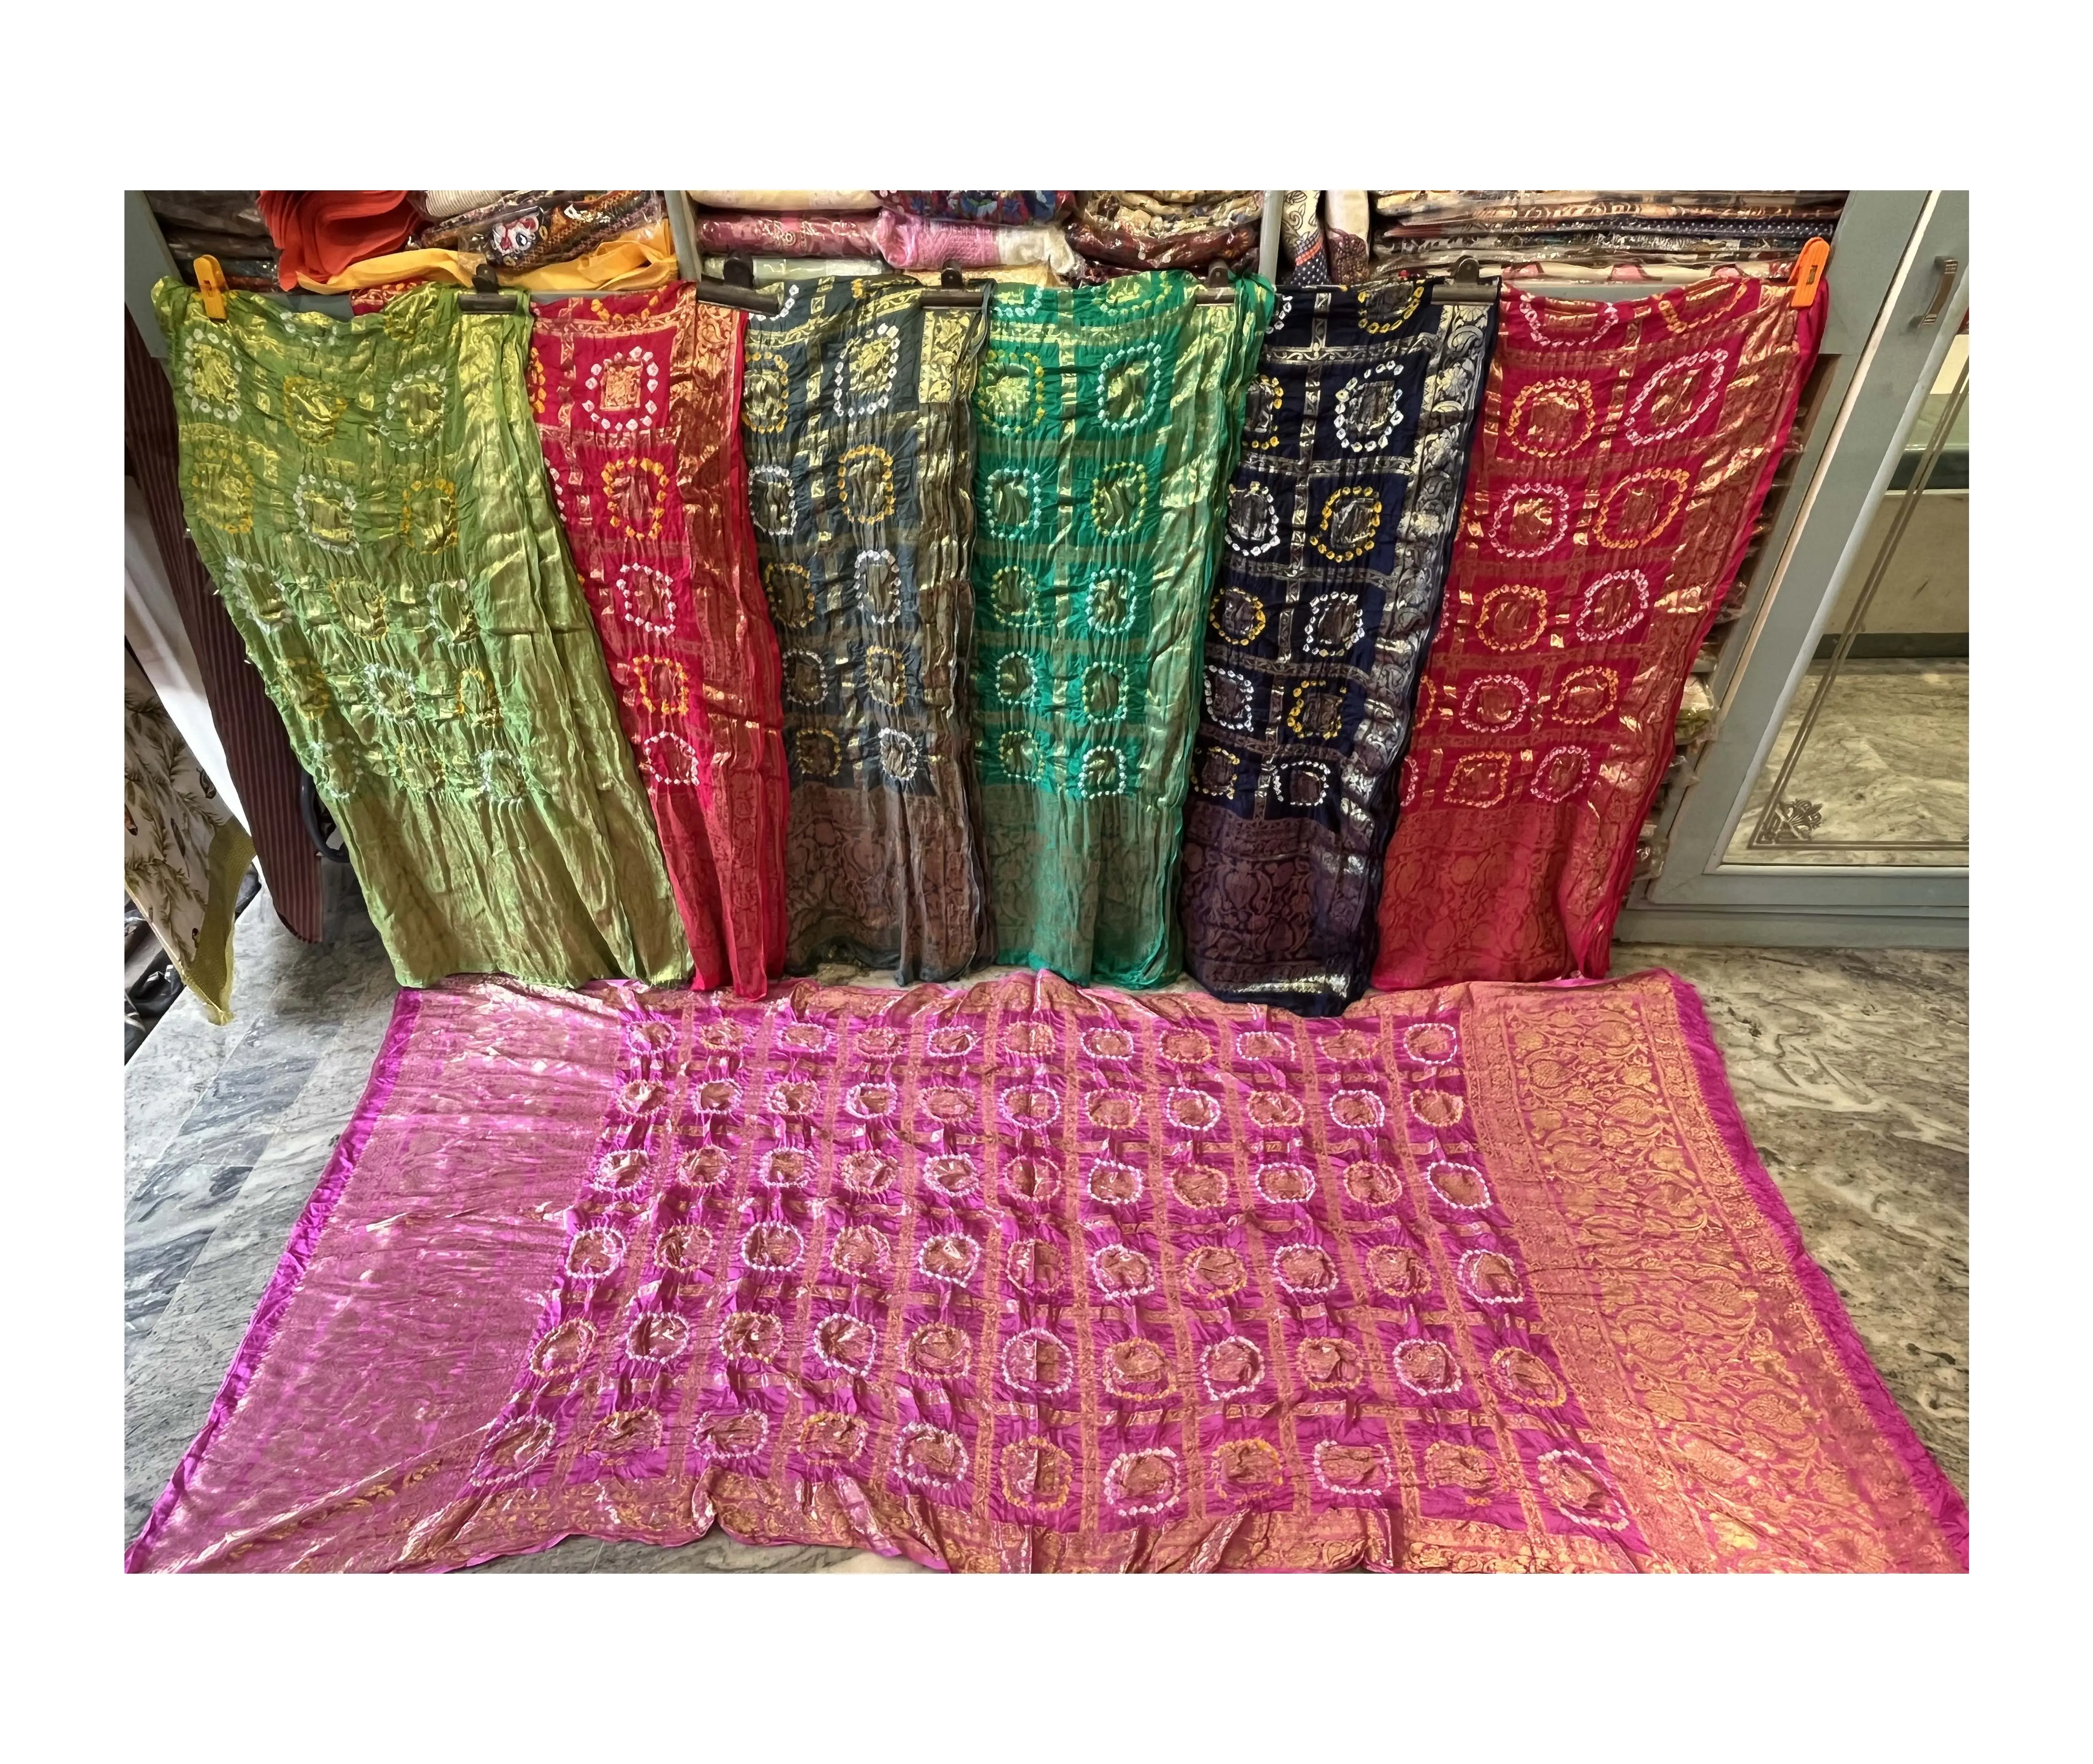 Seide gewebt-Schal/Dupatta-Indische Hochzeits schals-Banarasi Seide Dupatta Schal-Boho Schals-Geschenk für ihr Hochzeits geschenk